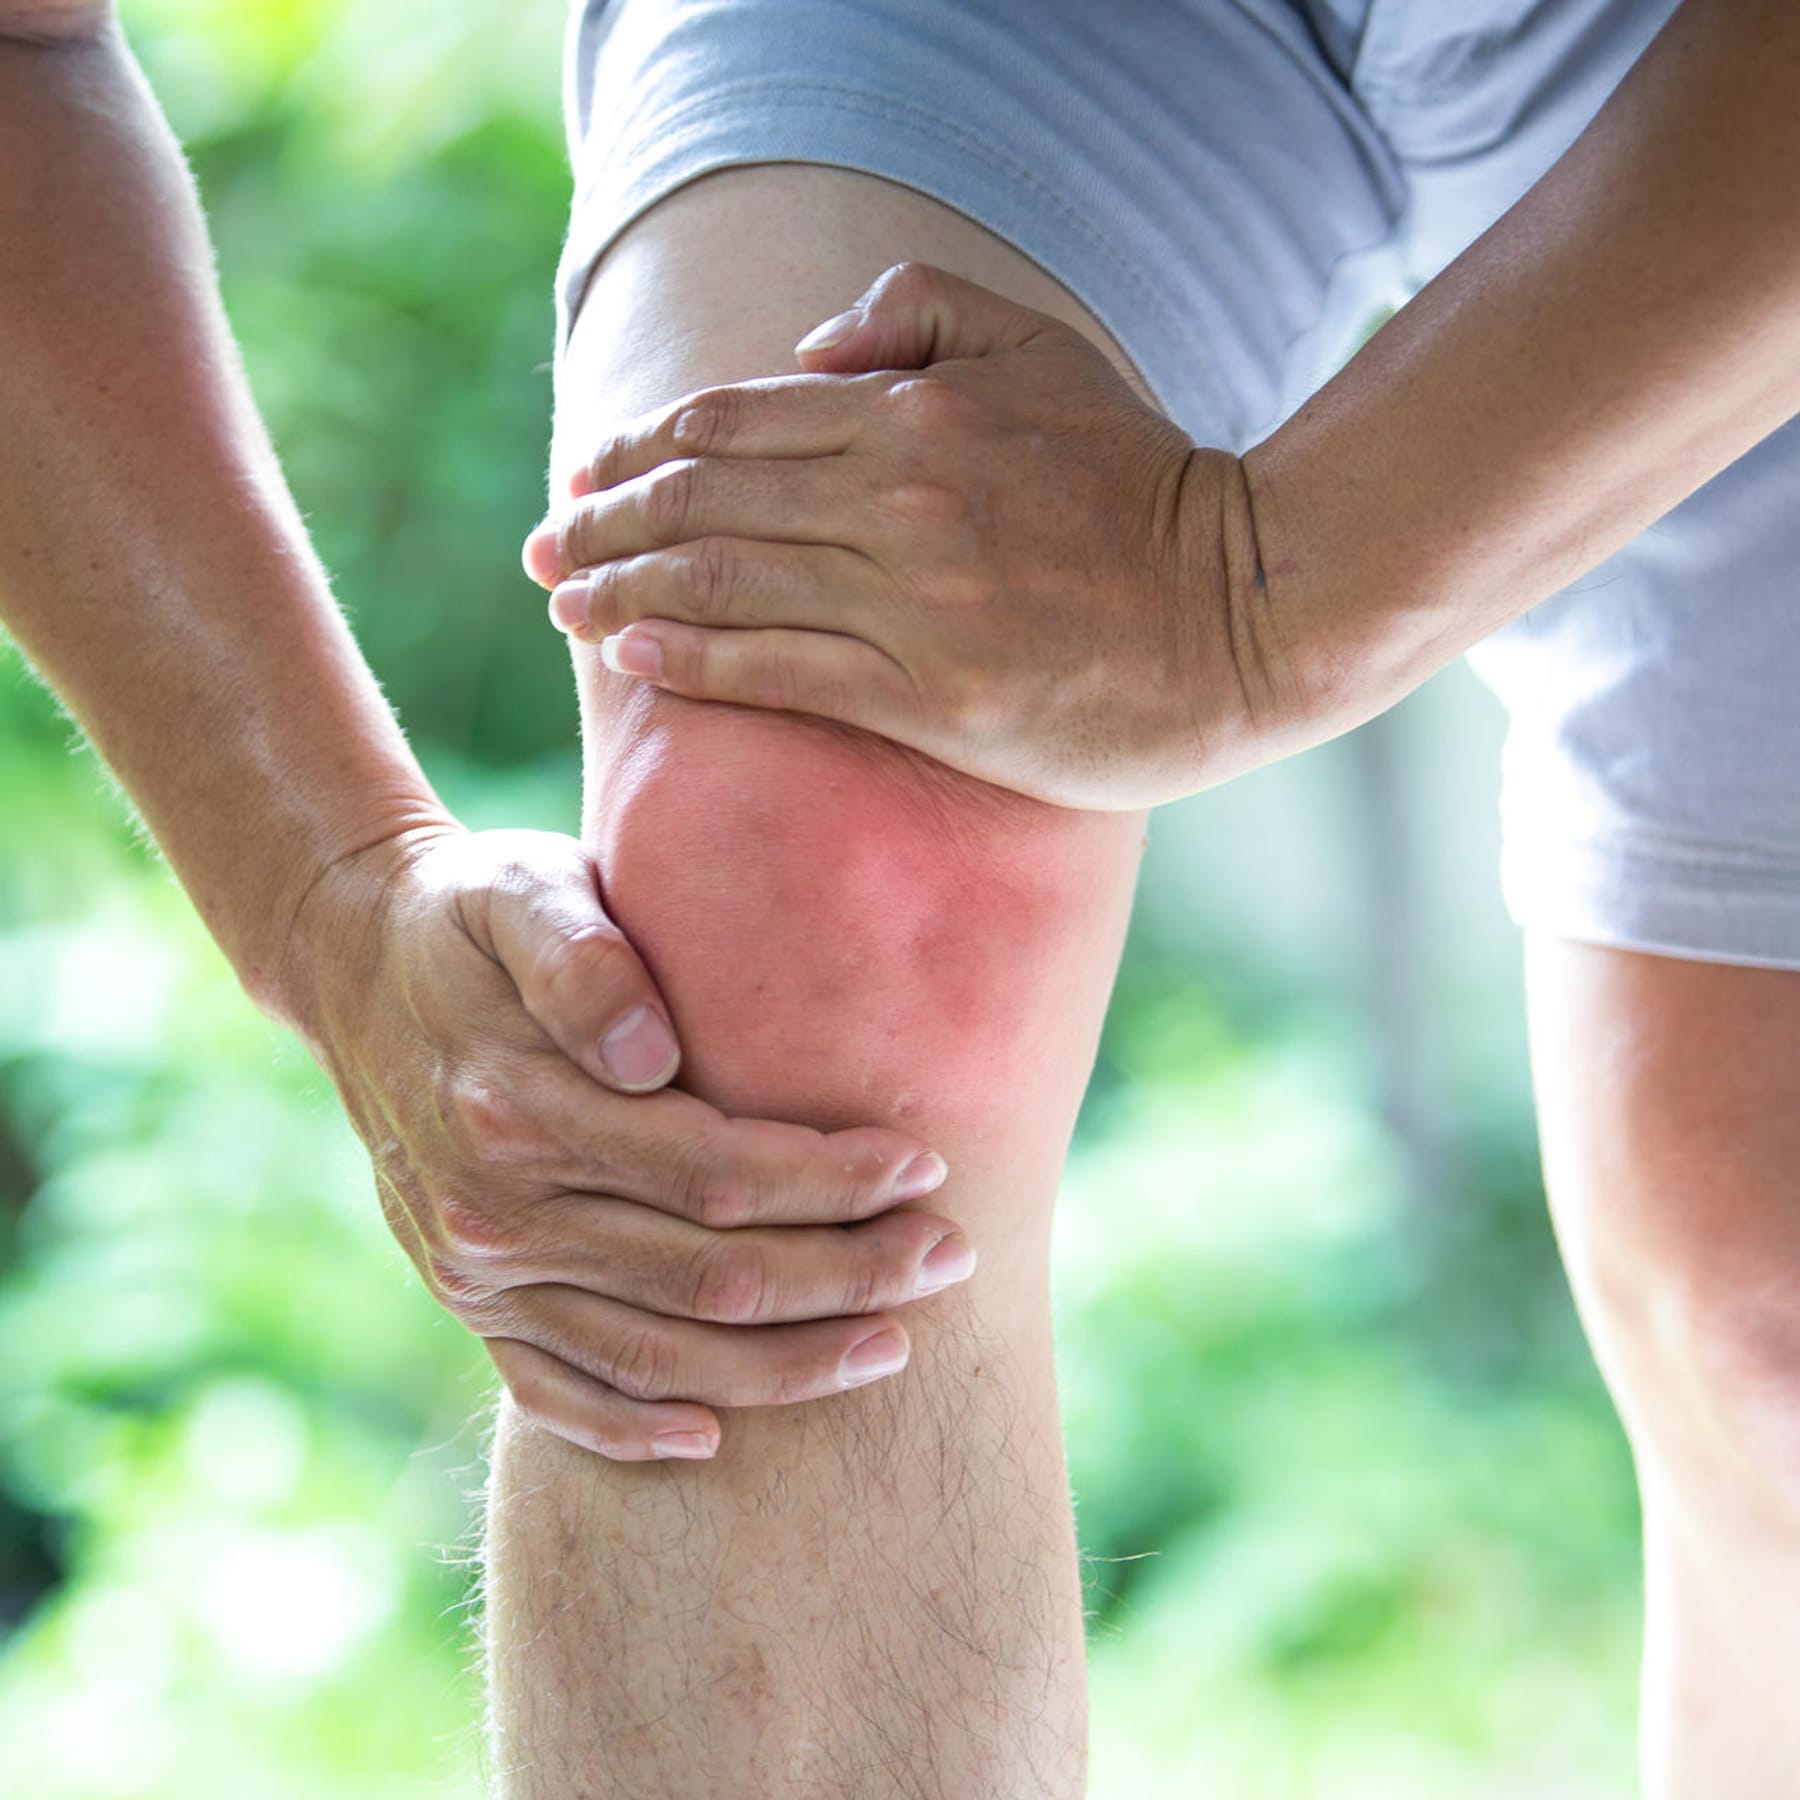 Knie Arthrose - Ursache, Symptome und Behandlung